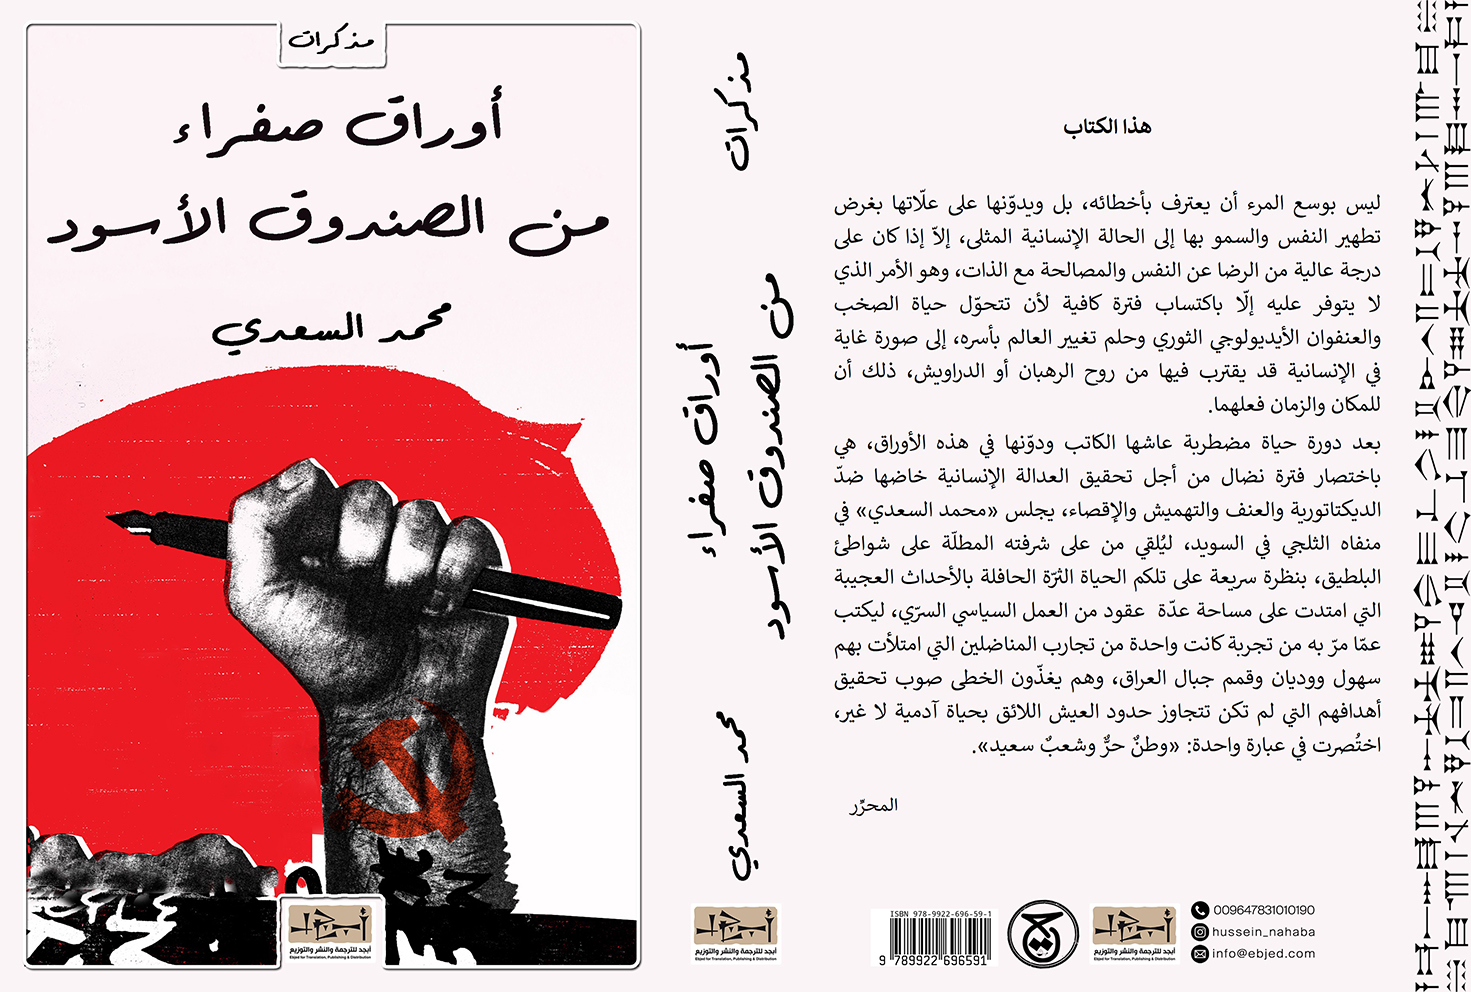 عنوان الكتاب: أوراق صفراء من الصندوق الأسود تأليف: محمد السعدي التصنيف: مذكرات